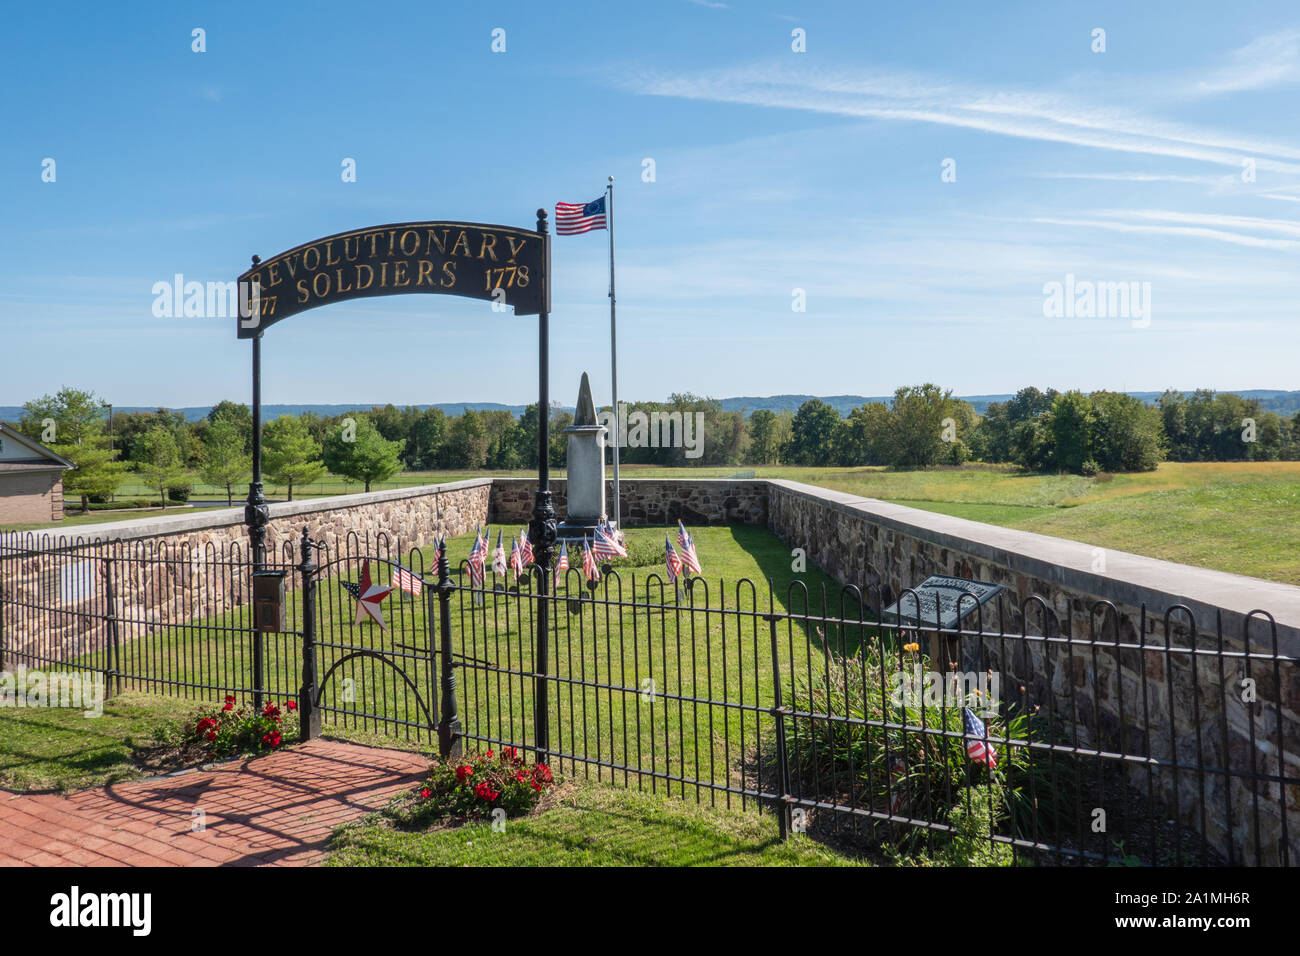 Oriente Vincent Township, PA - sett. 21, 2019: la rivoluzionaria monumento di soldati e recinto è in memoria di 22 soldati morti nel 1778. Foto Stock